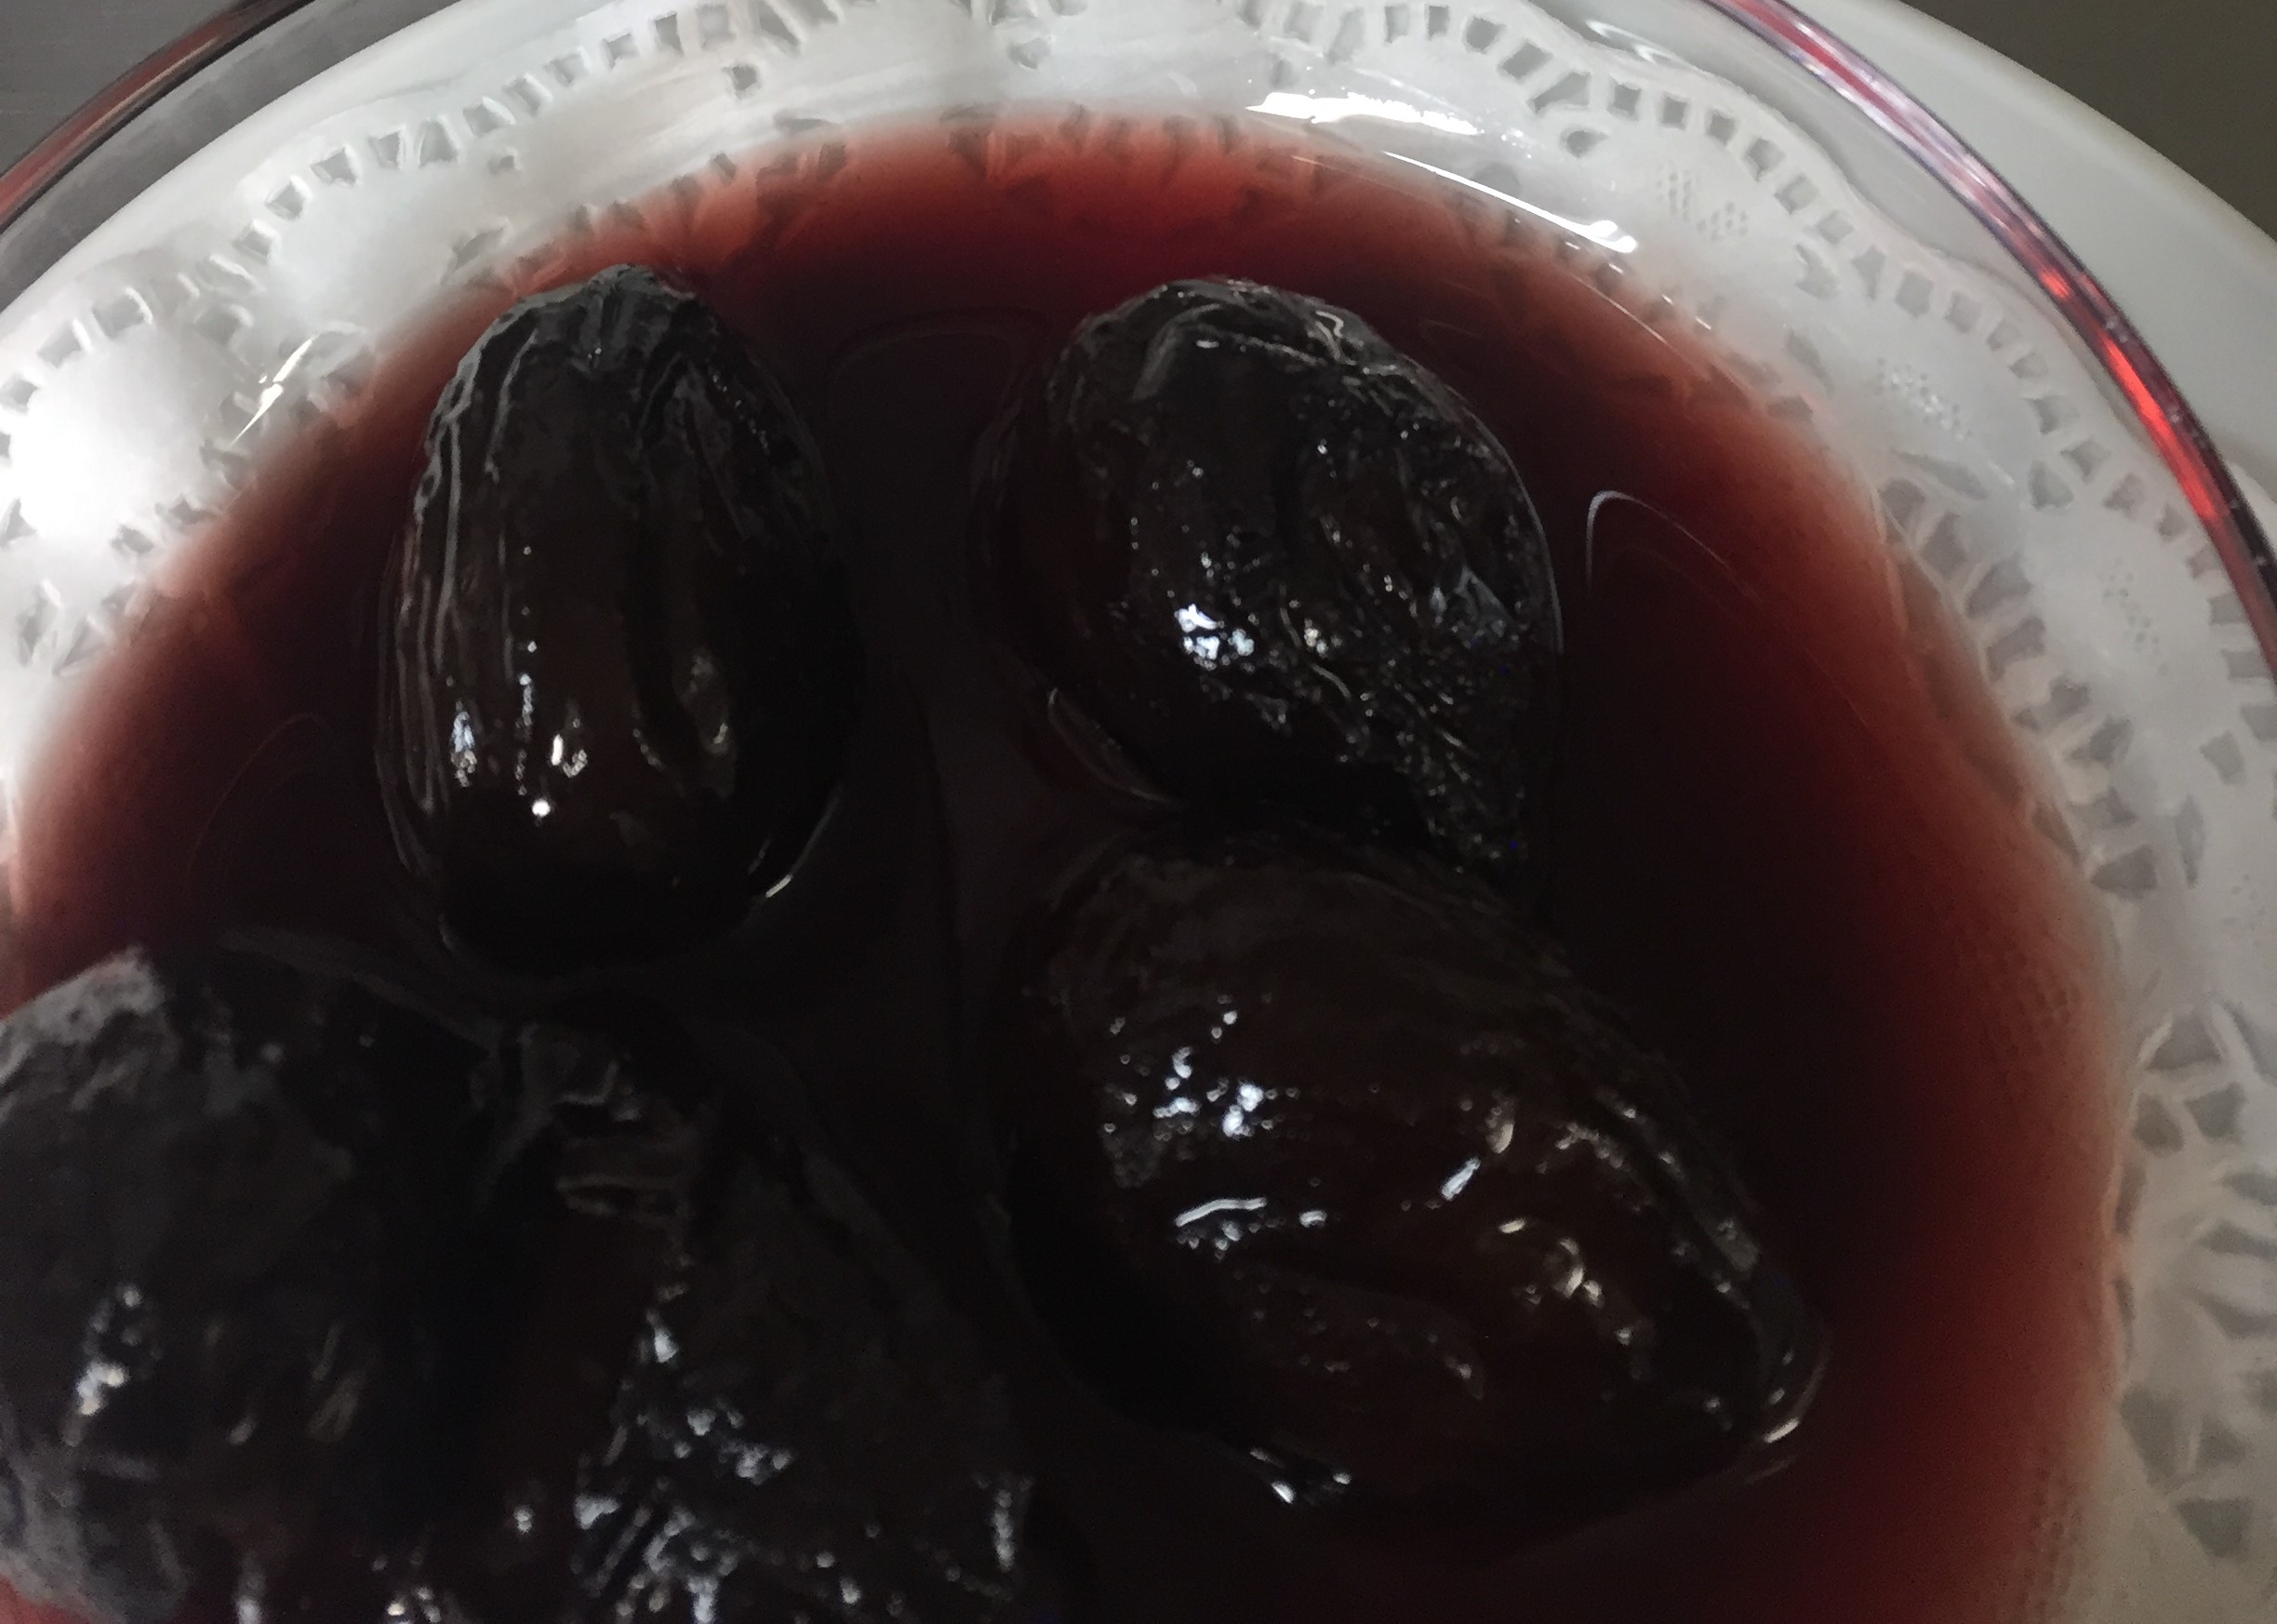 Agen prunes in red wine